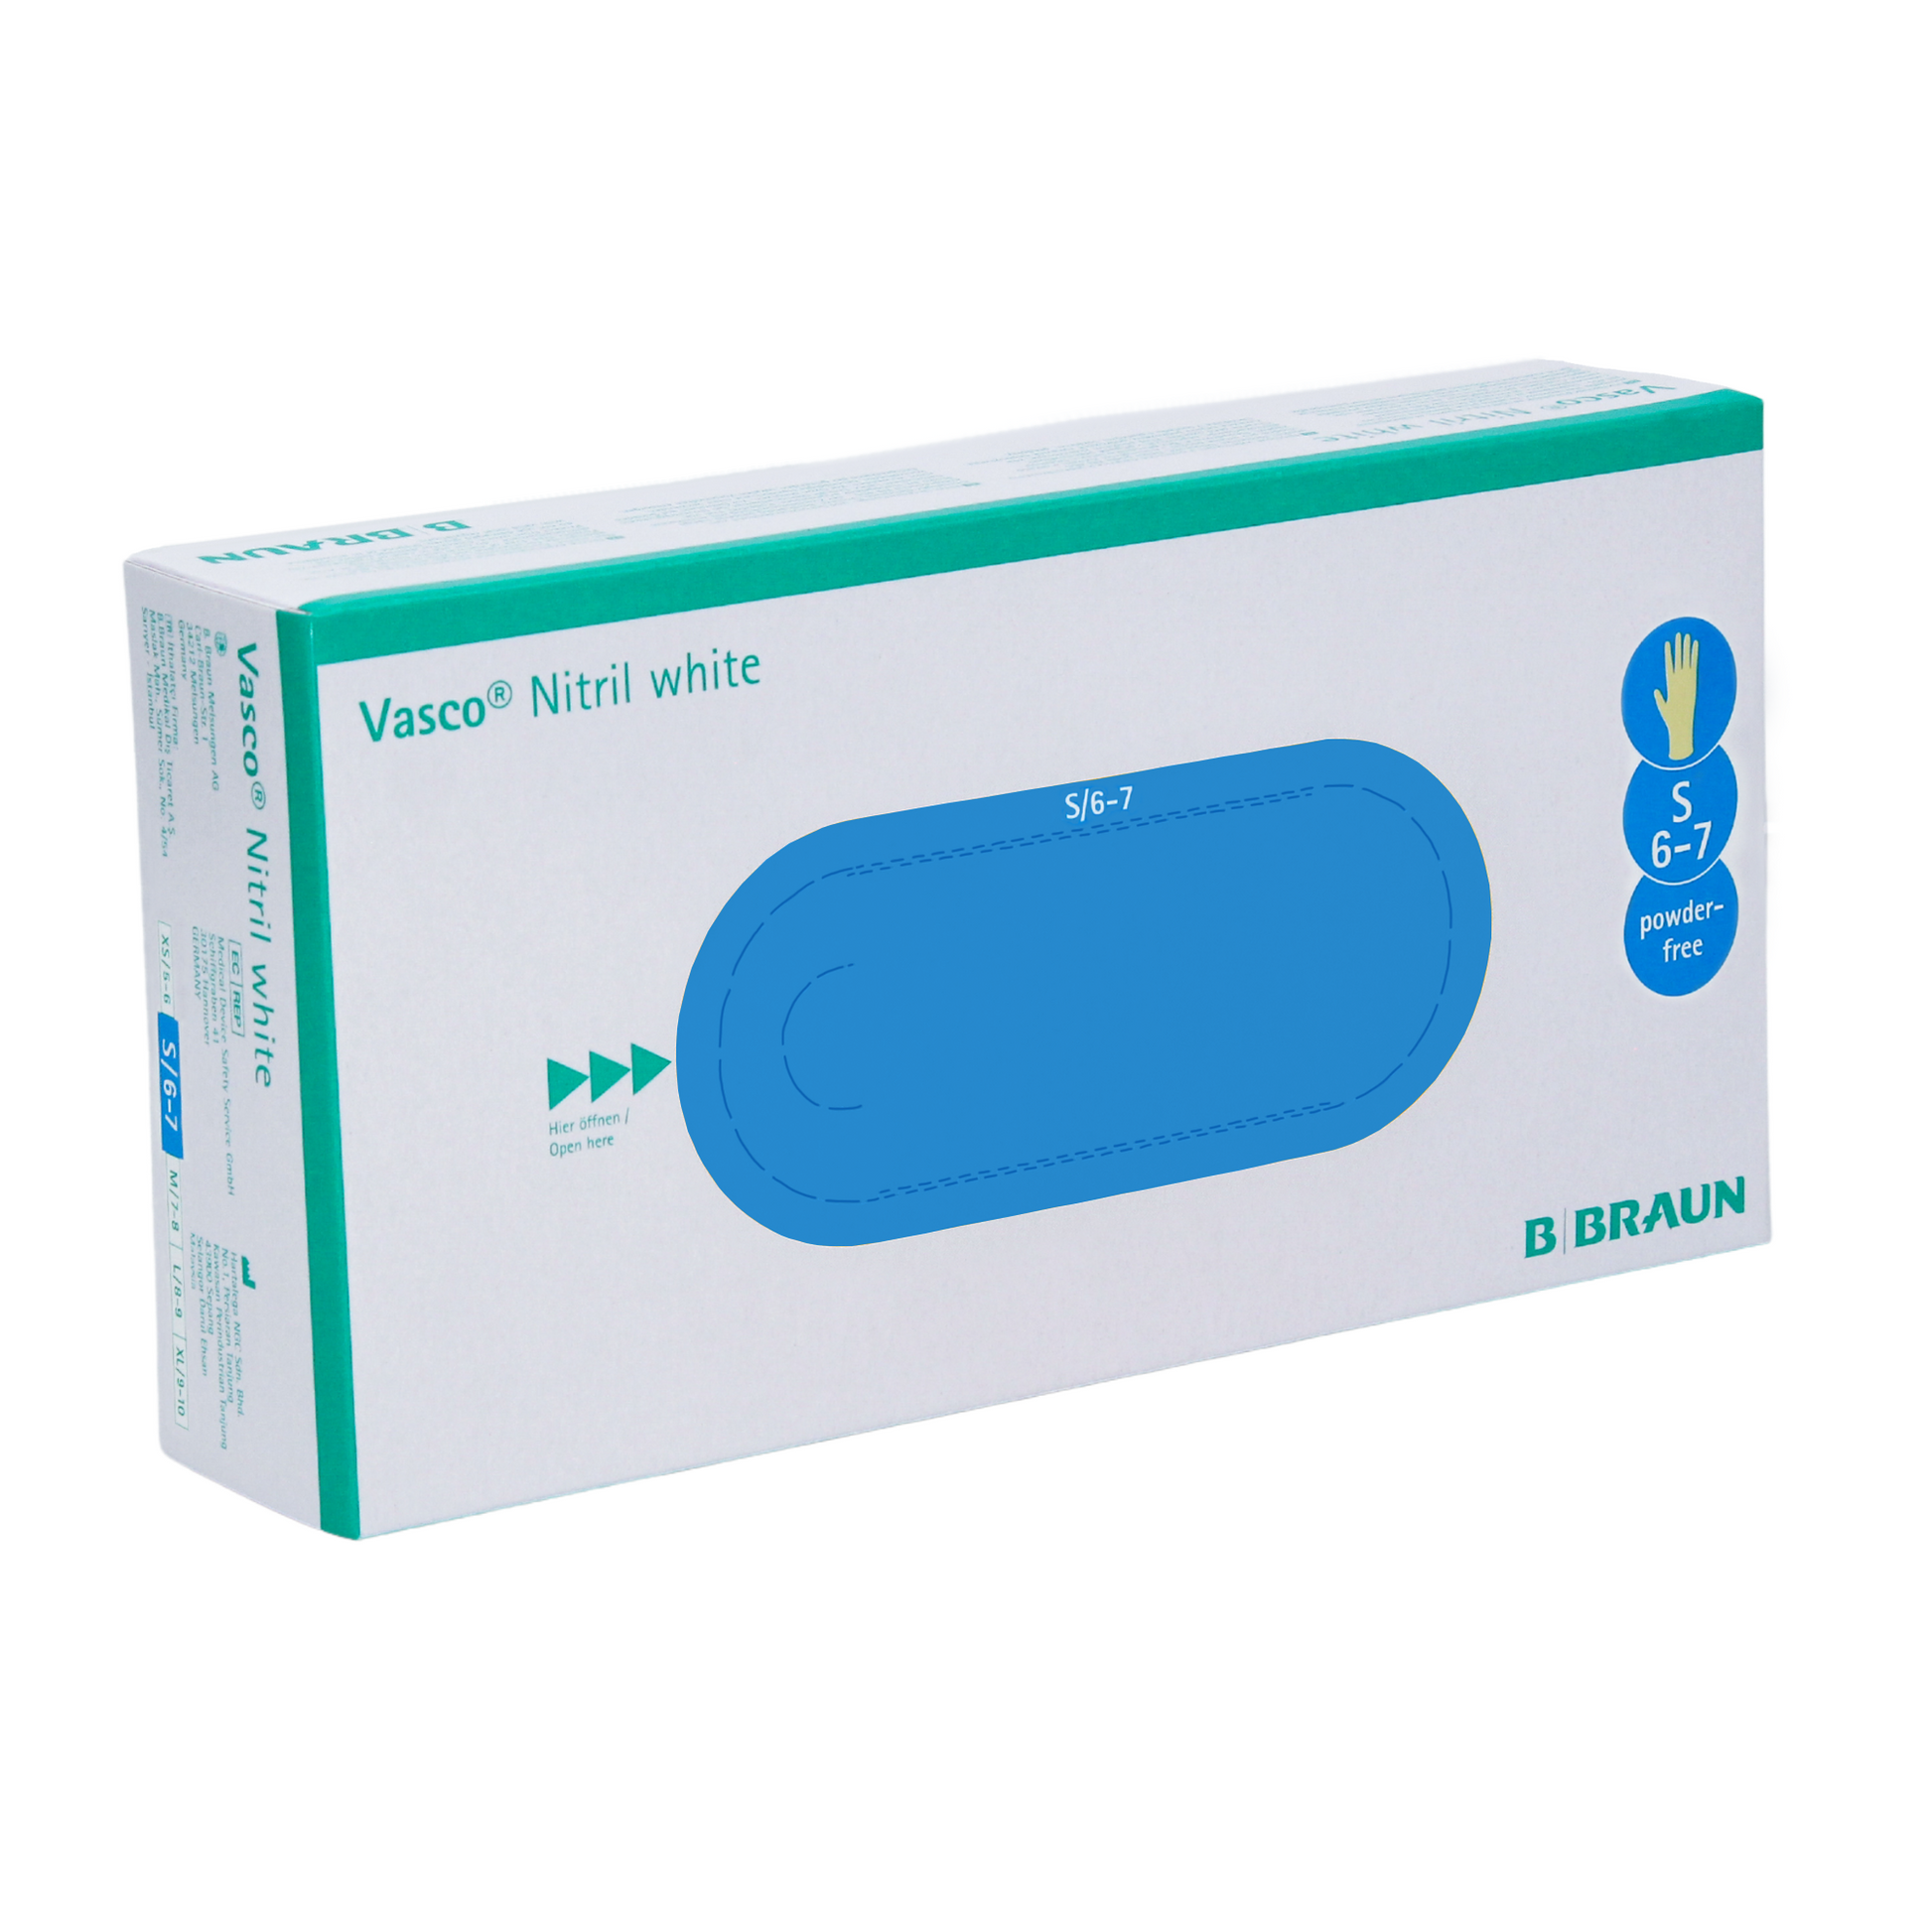 Eine Packung B. Braun Vasco® Nitril weiße Einmalhandschuhe, Größe 6-7, präsentiert in einem horizontalen blau-weißen Karton von B. Braun Melsungen AG.